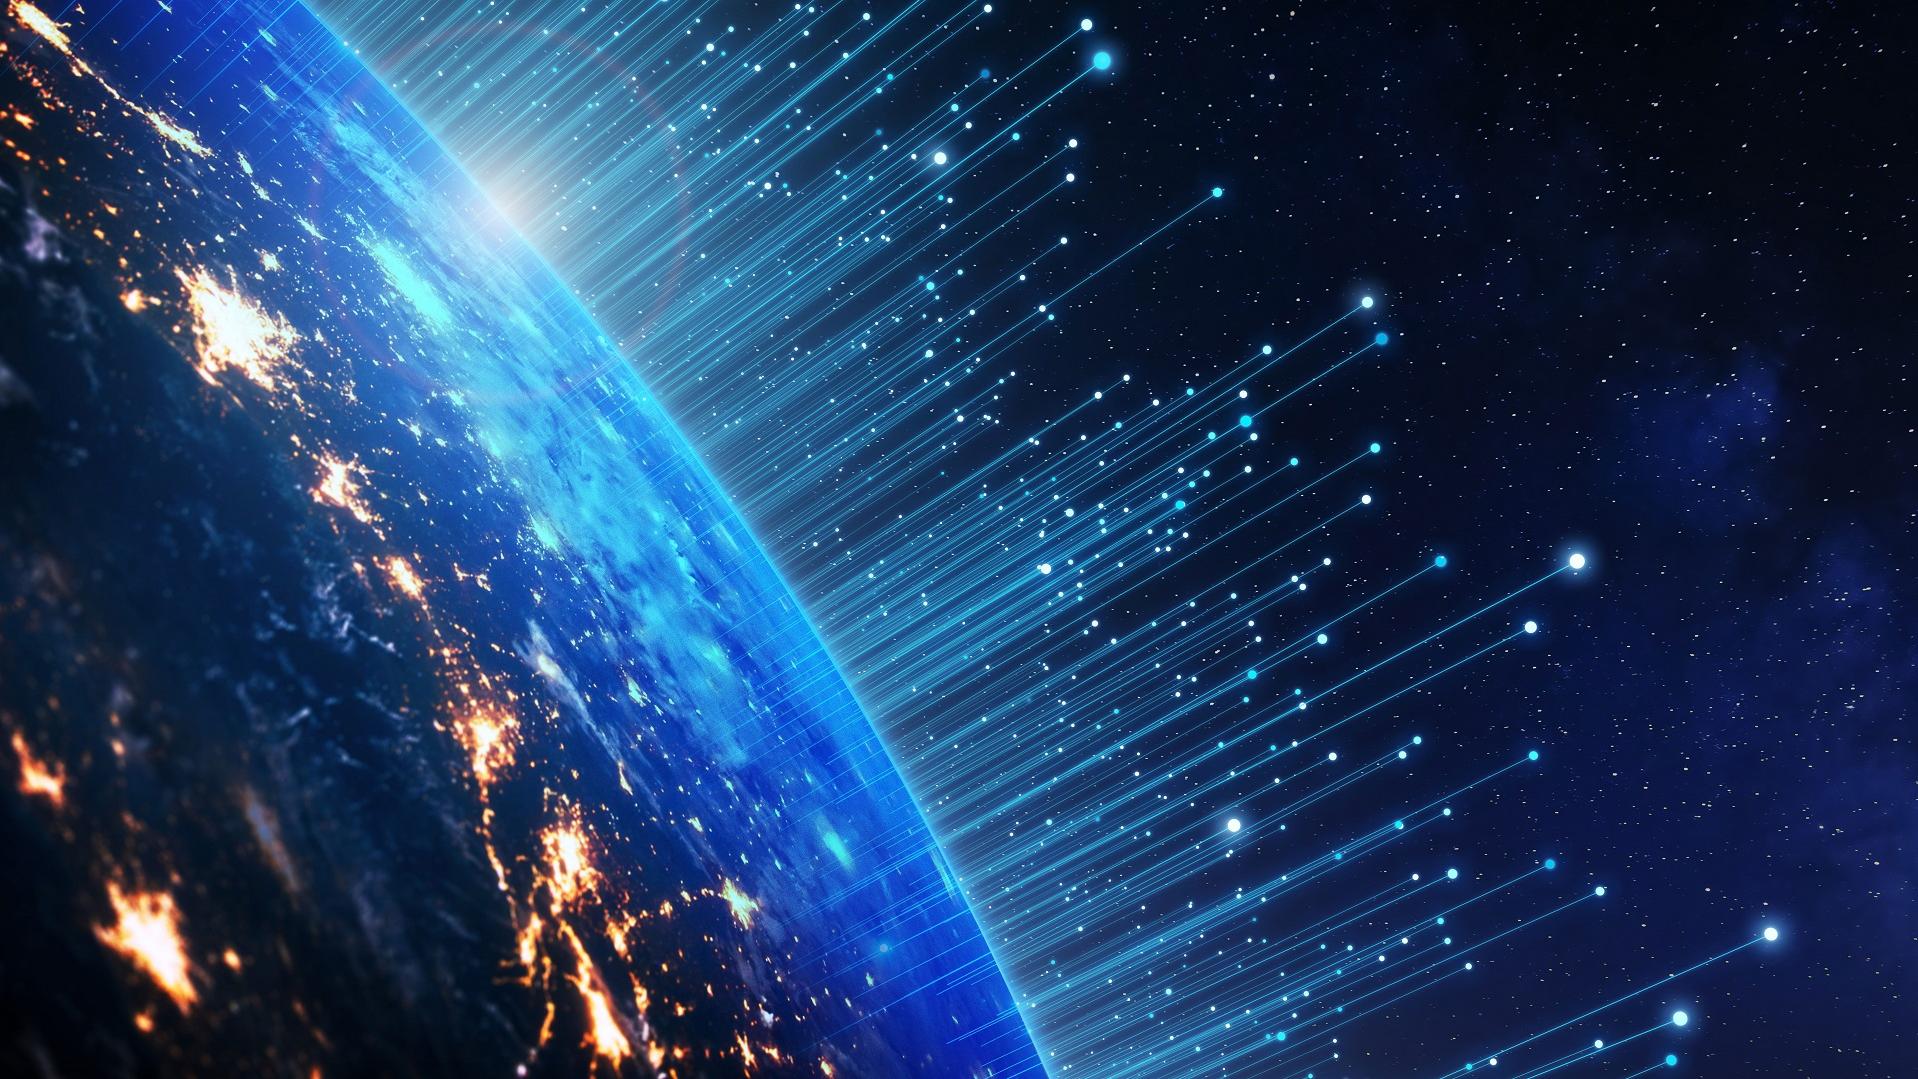 Telekommunikationstechnologie mit Verbindungen rund um die Erde aus dem Weltraum betrachtet